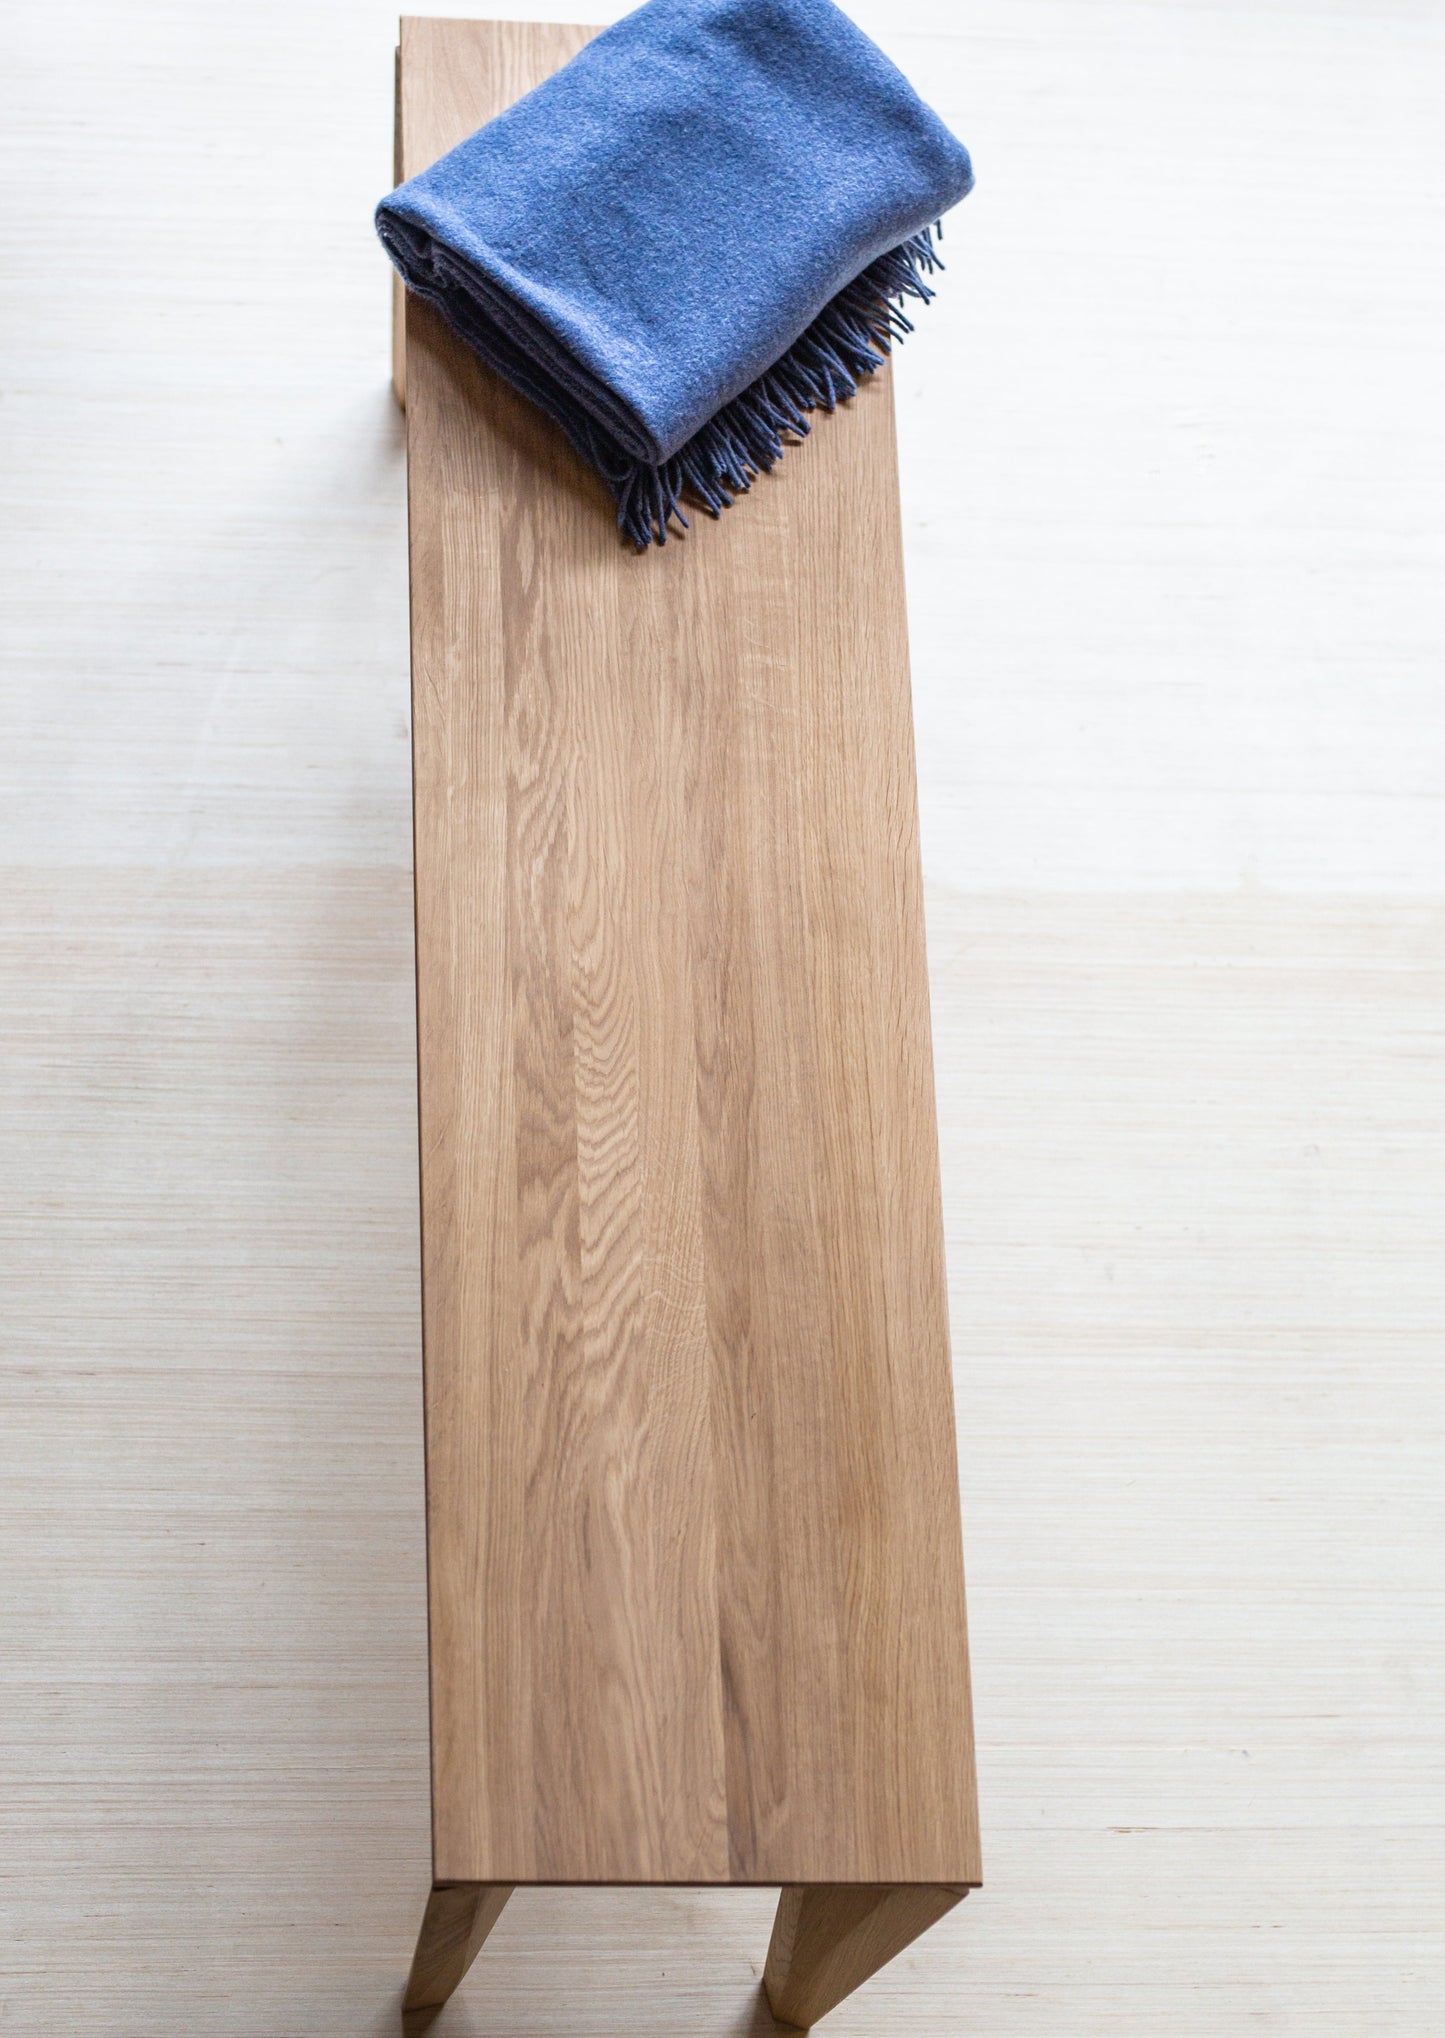 Sittebenken Peka er laget av høyeste kvalitet lys eik. Denne sittebenken har elegante og moderne former, med unike bein.